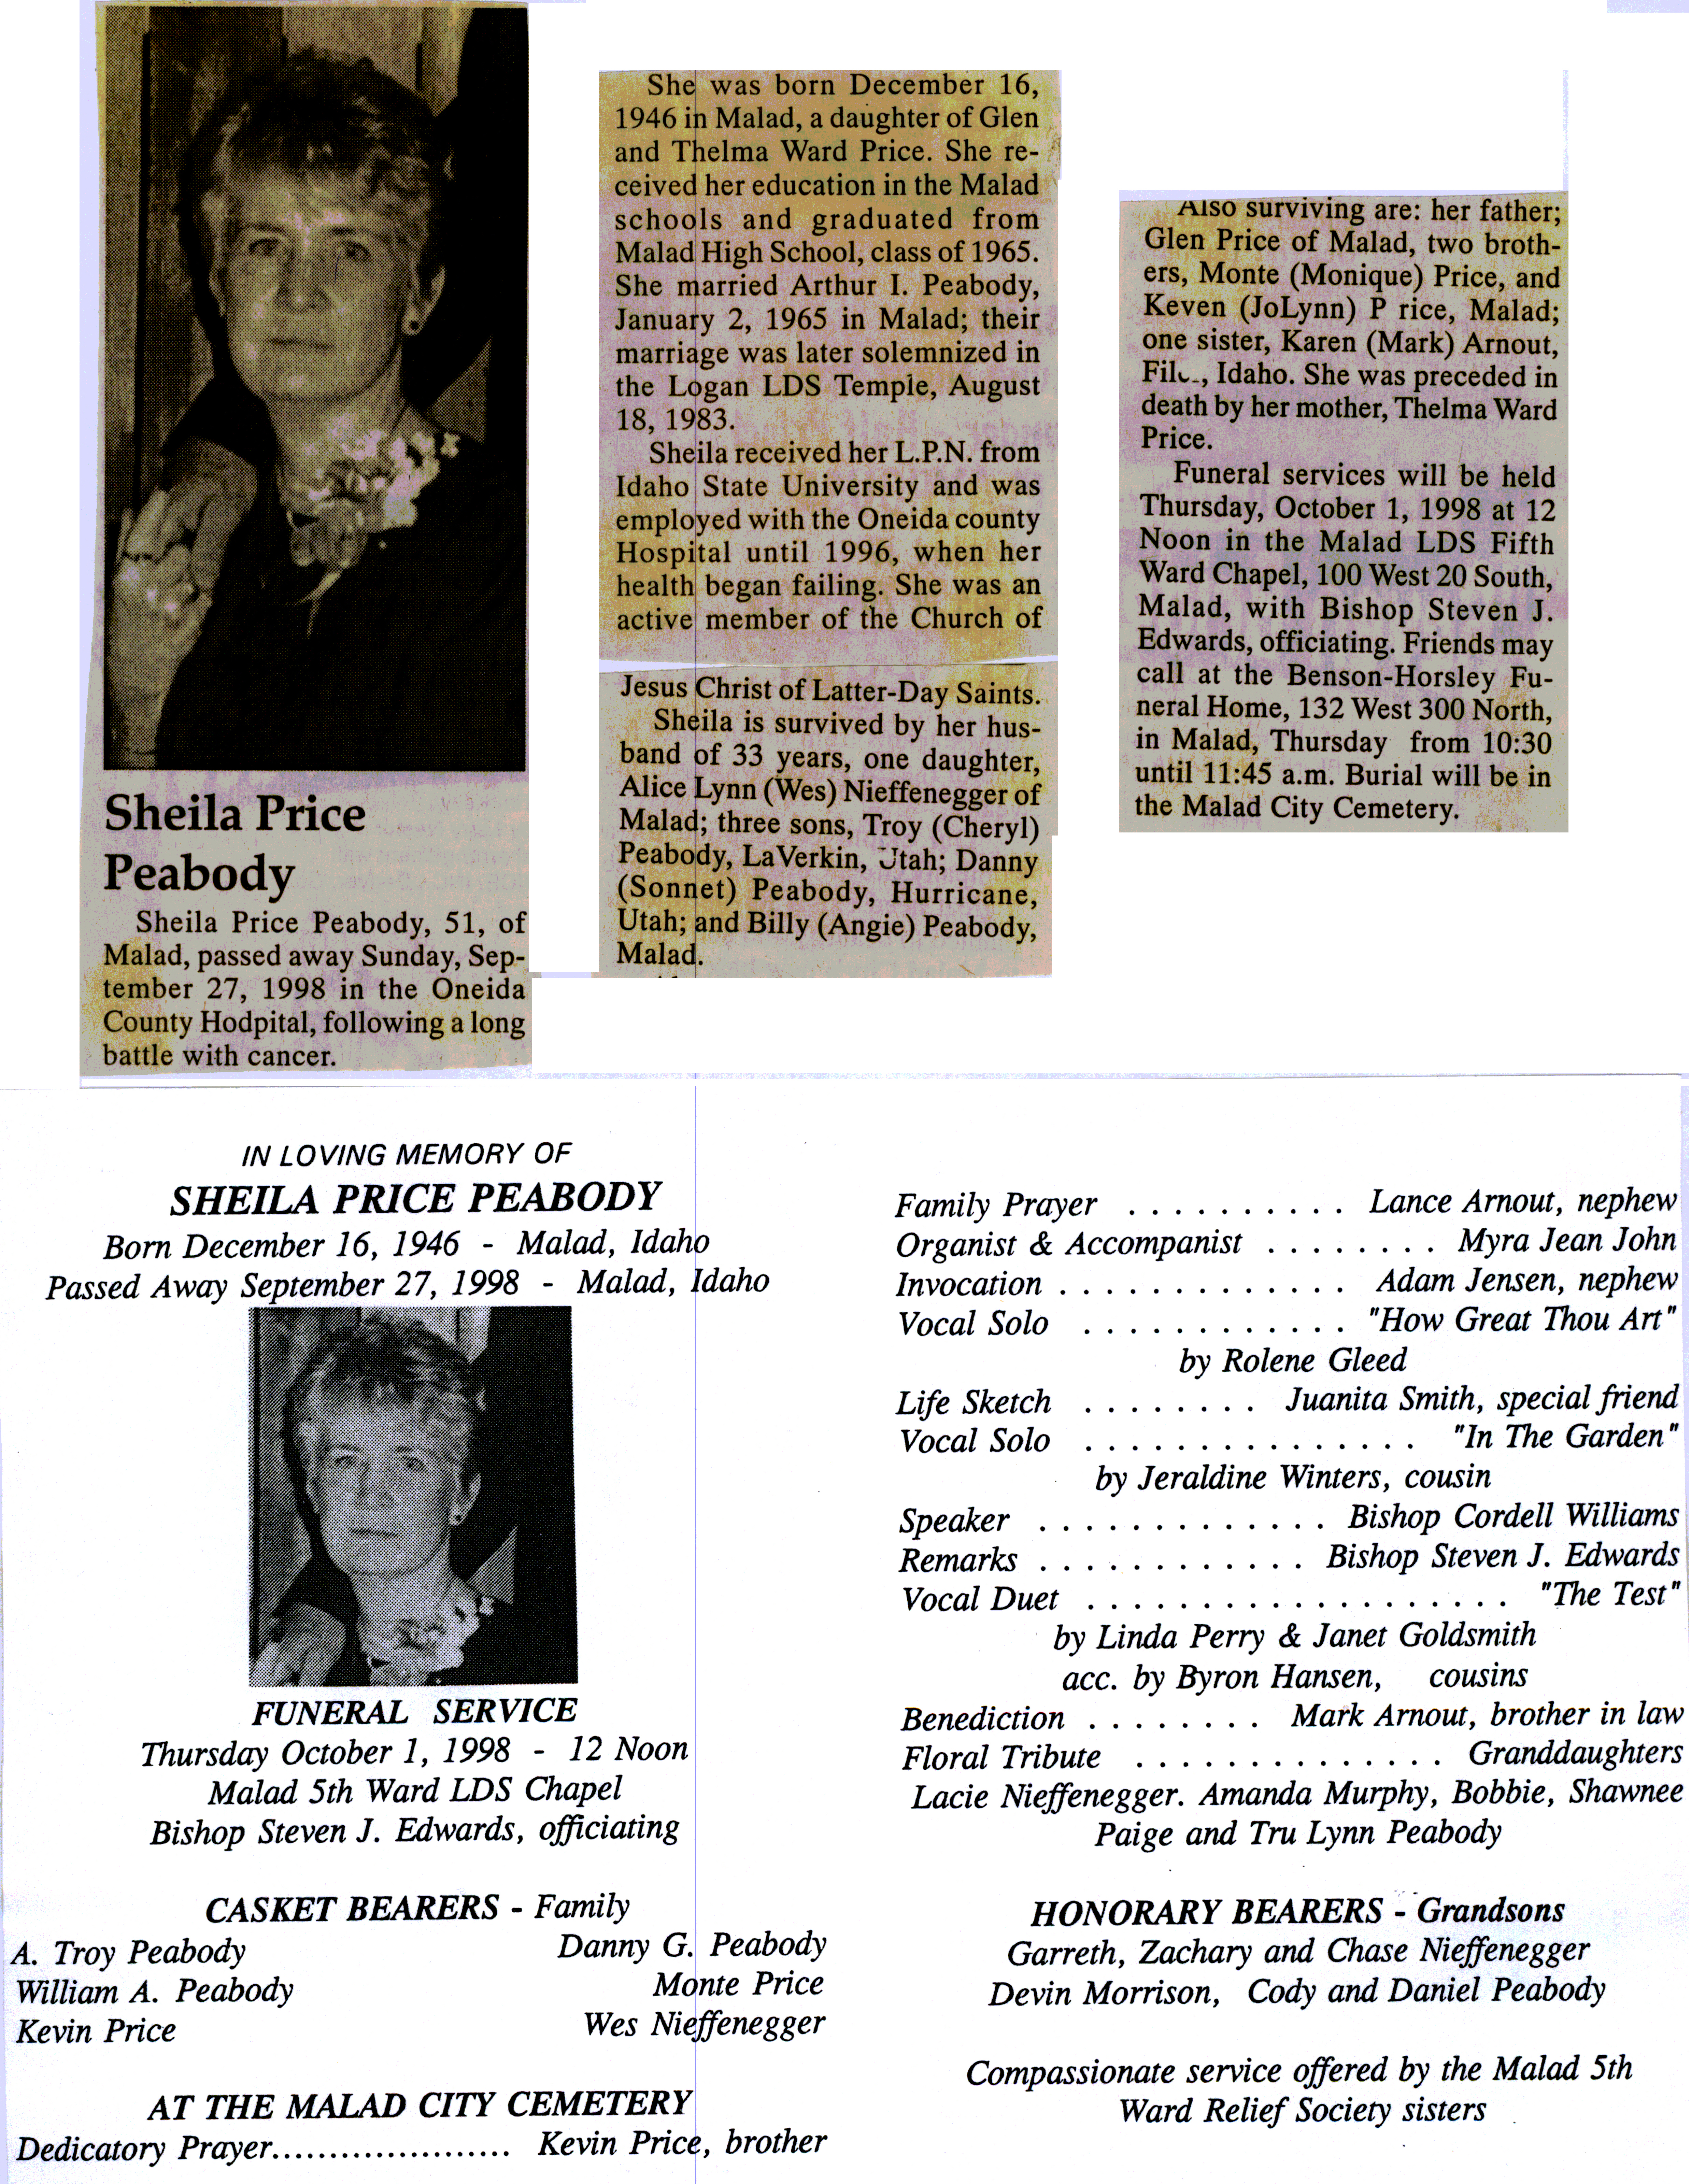 Sheila Price Peabody obit and program